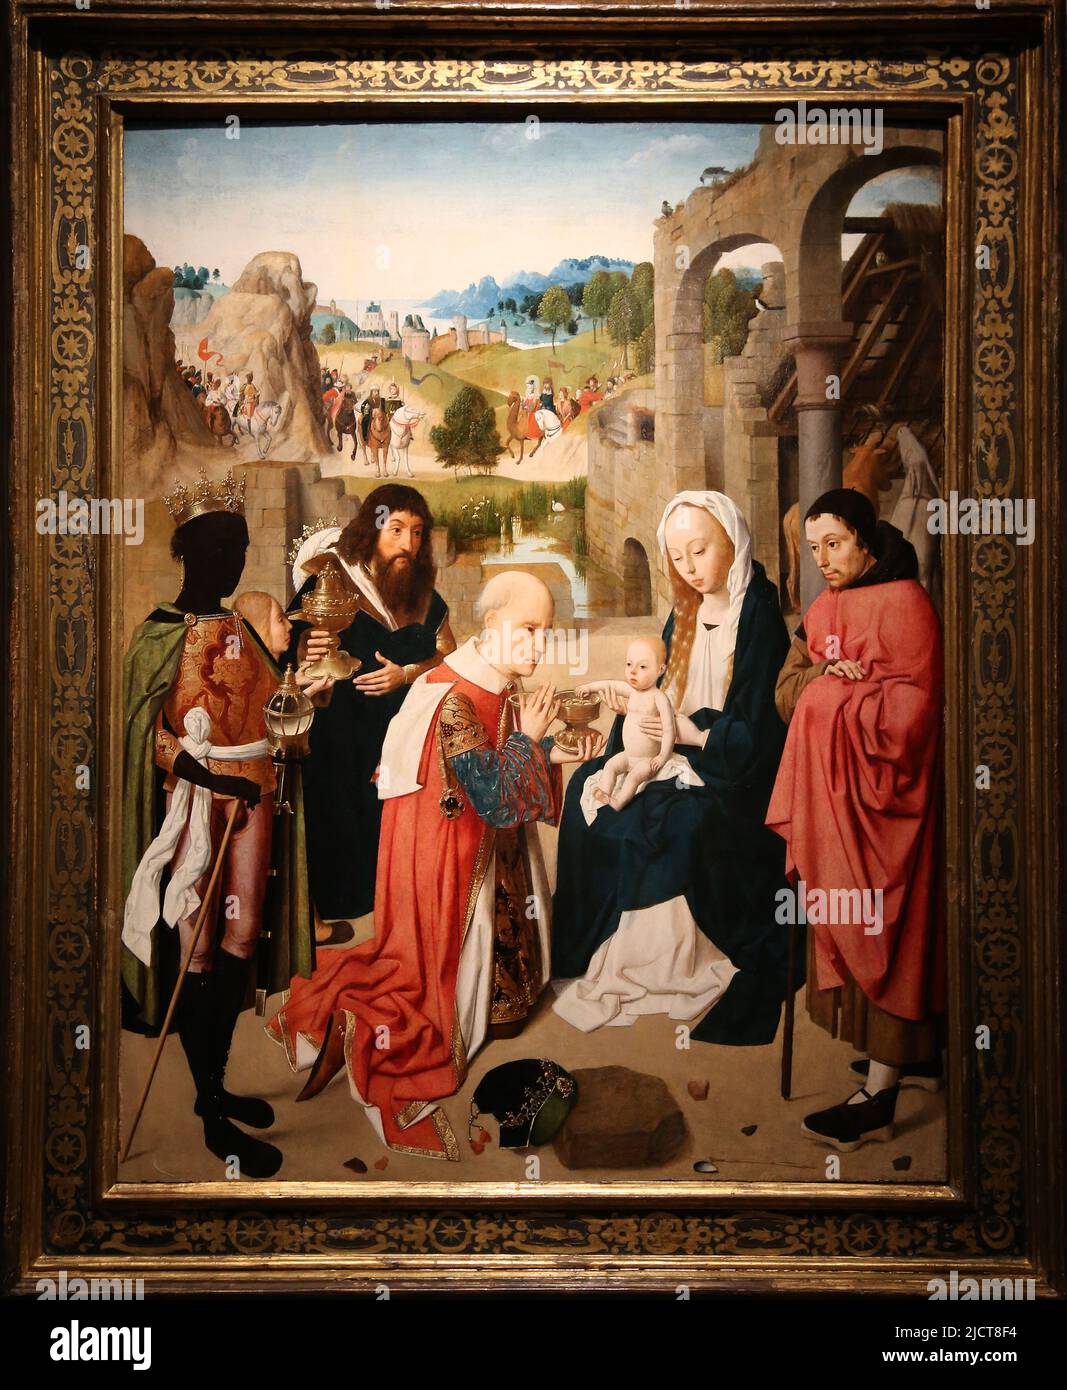 Die Anbetung der Könige, von Geertgen tot Sint-Jans (c. 1460-c.1490). Haarlem, c. 1480-1485. Öl auf der Platte. Rijksmuseum. Amsterdam. Niederlande Stockfoto